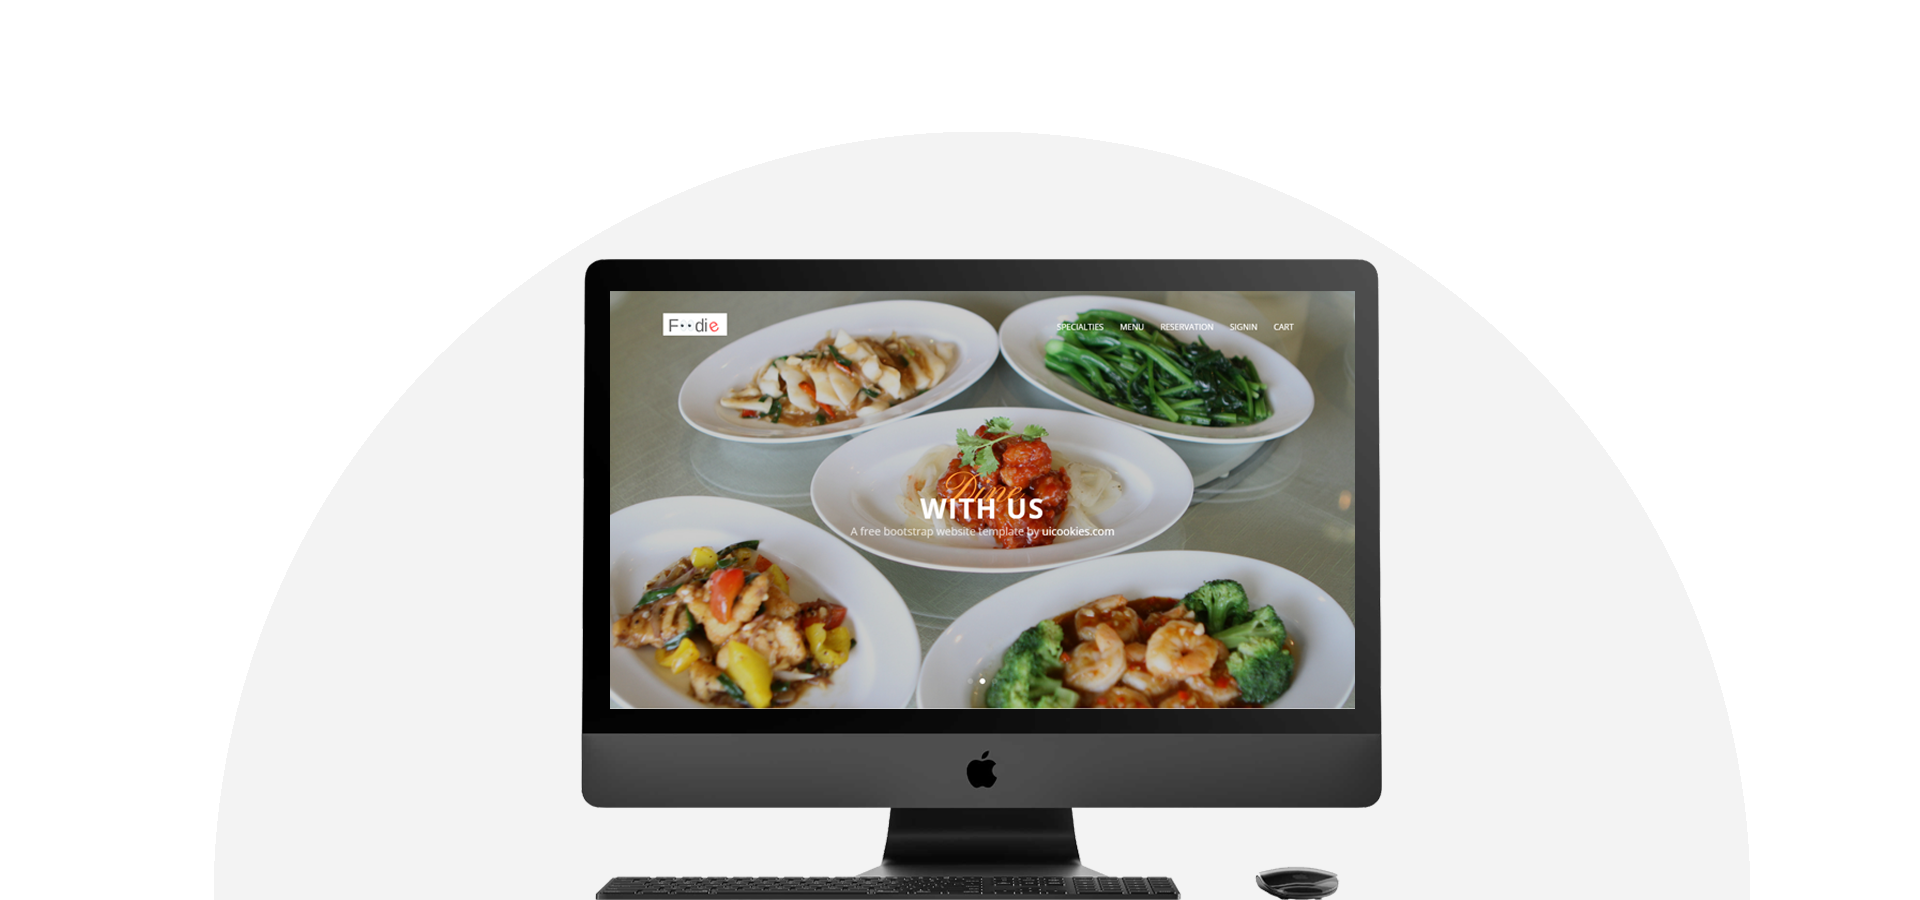 online food ordering website